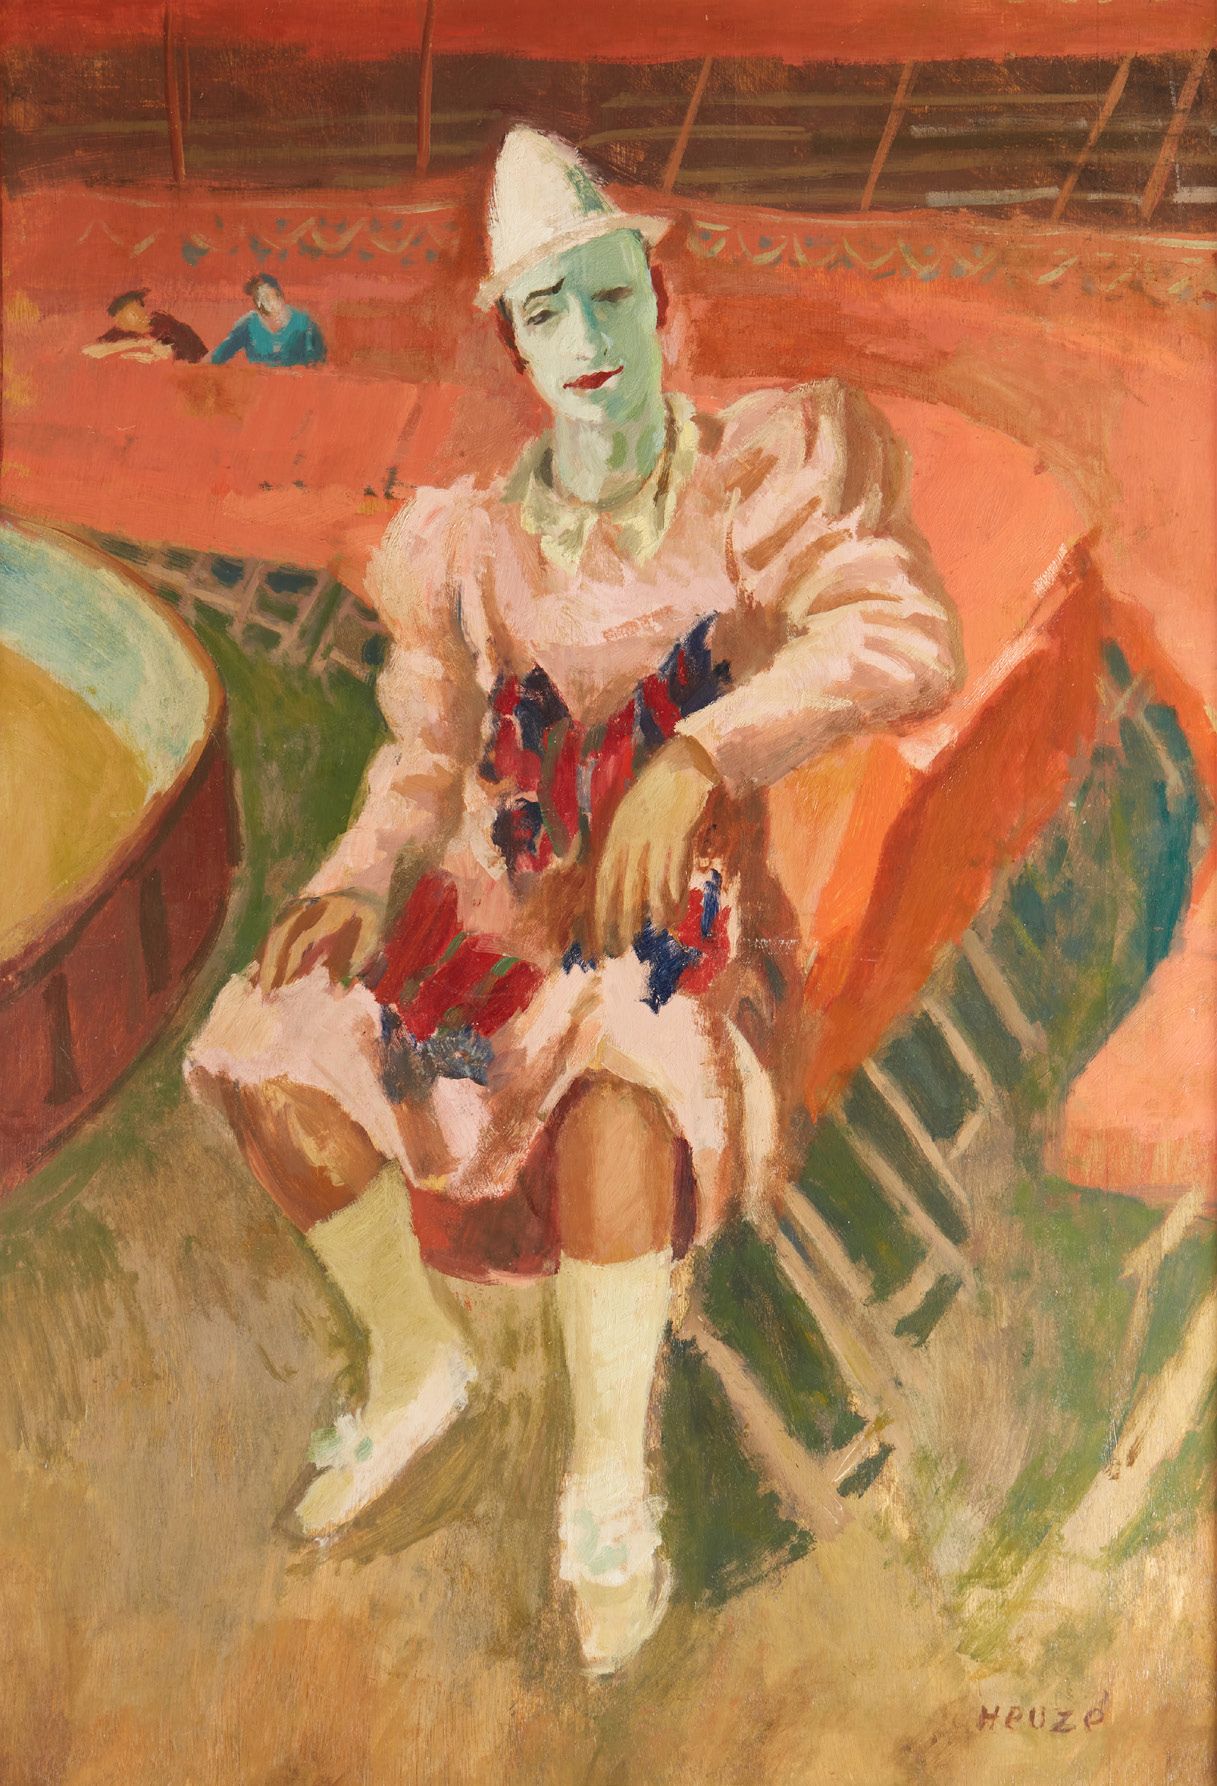 Edmond Amédée HEUZÉ (1884-1967) Seated clown
Oil on panel
108 x 77 cm